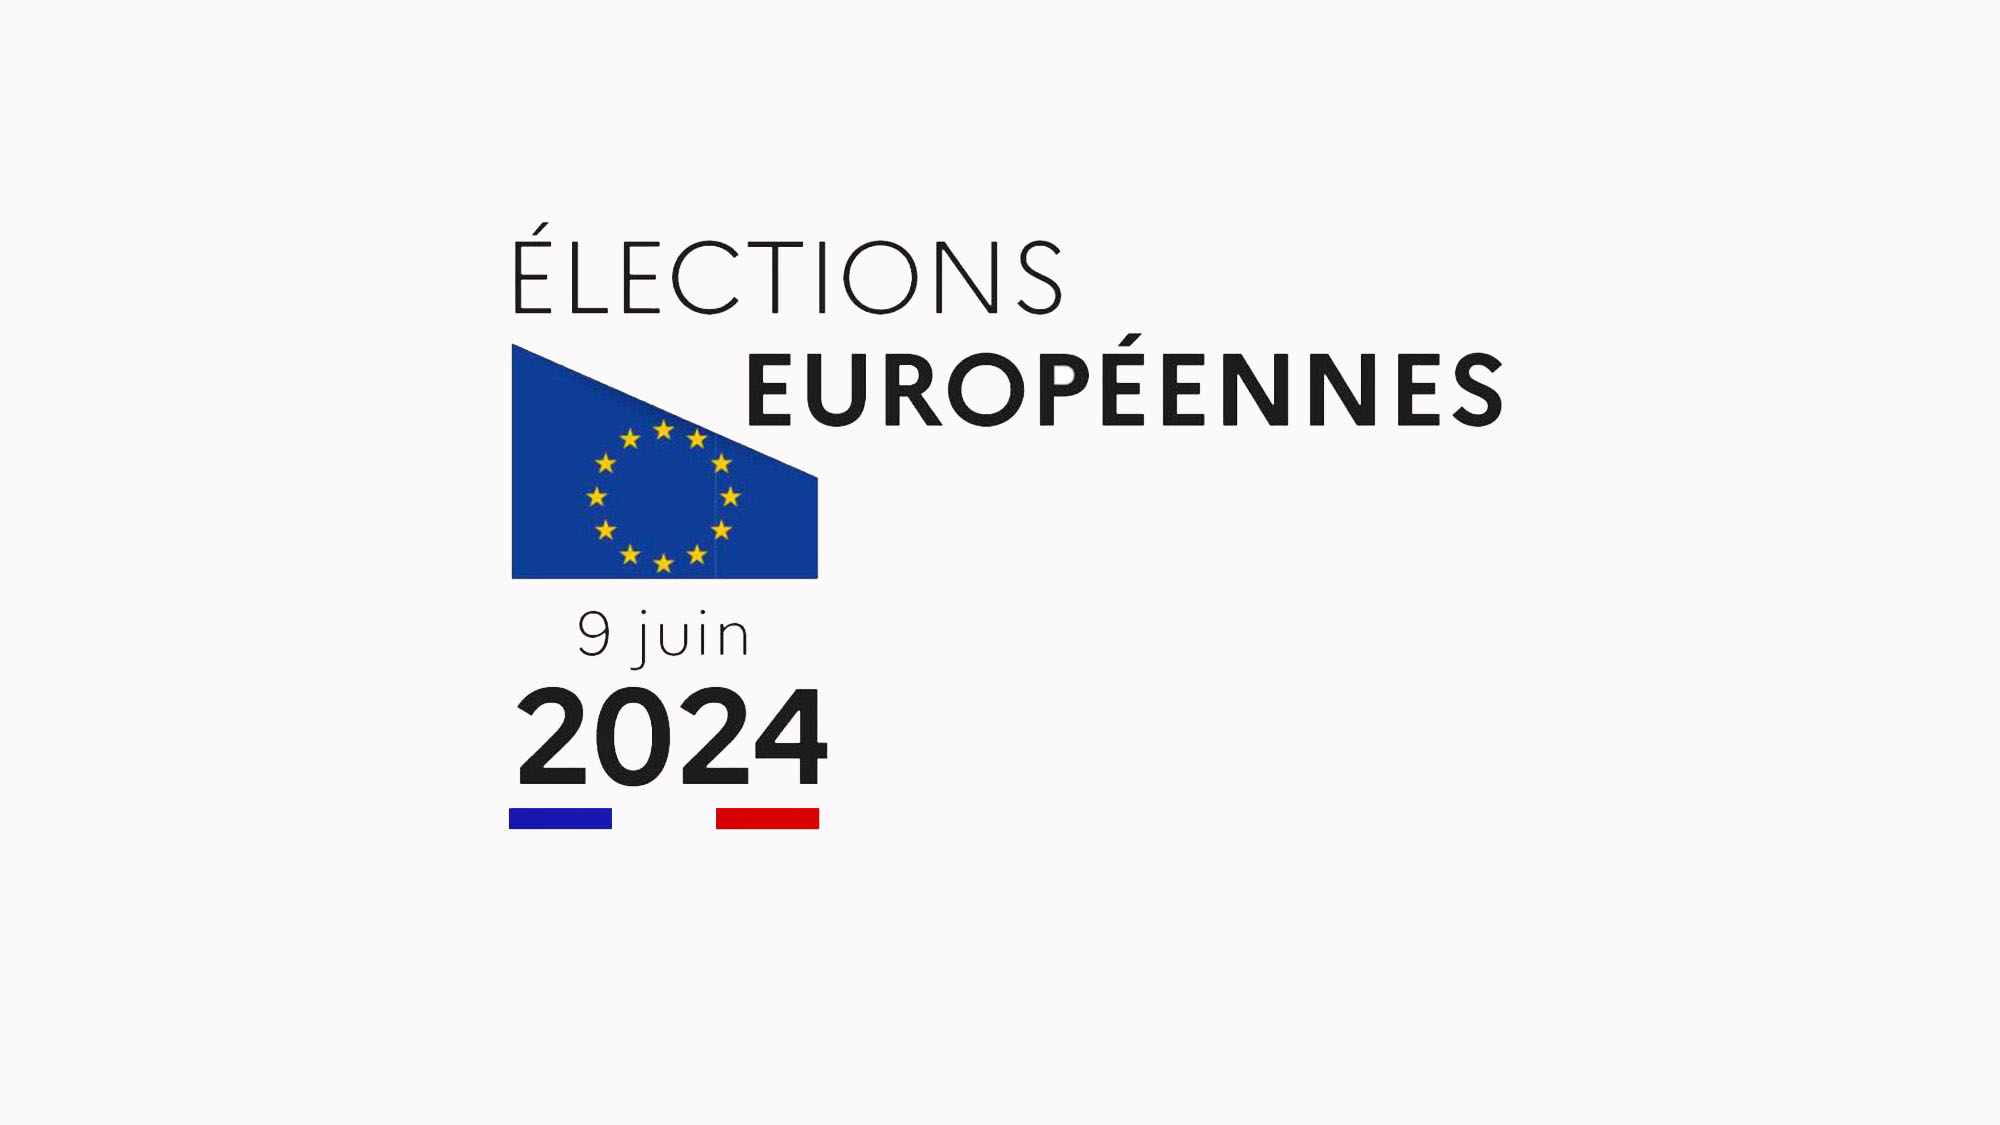 Visuel élections européennes - 2024 0609 - 1